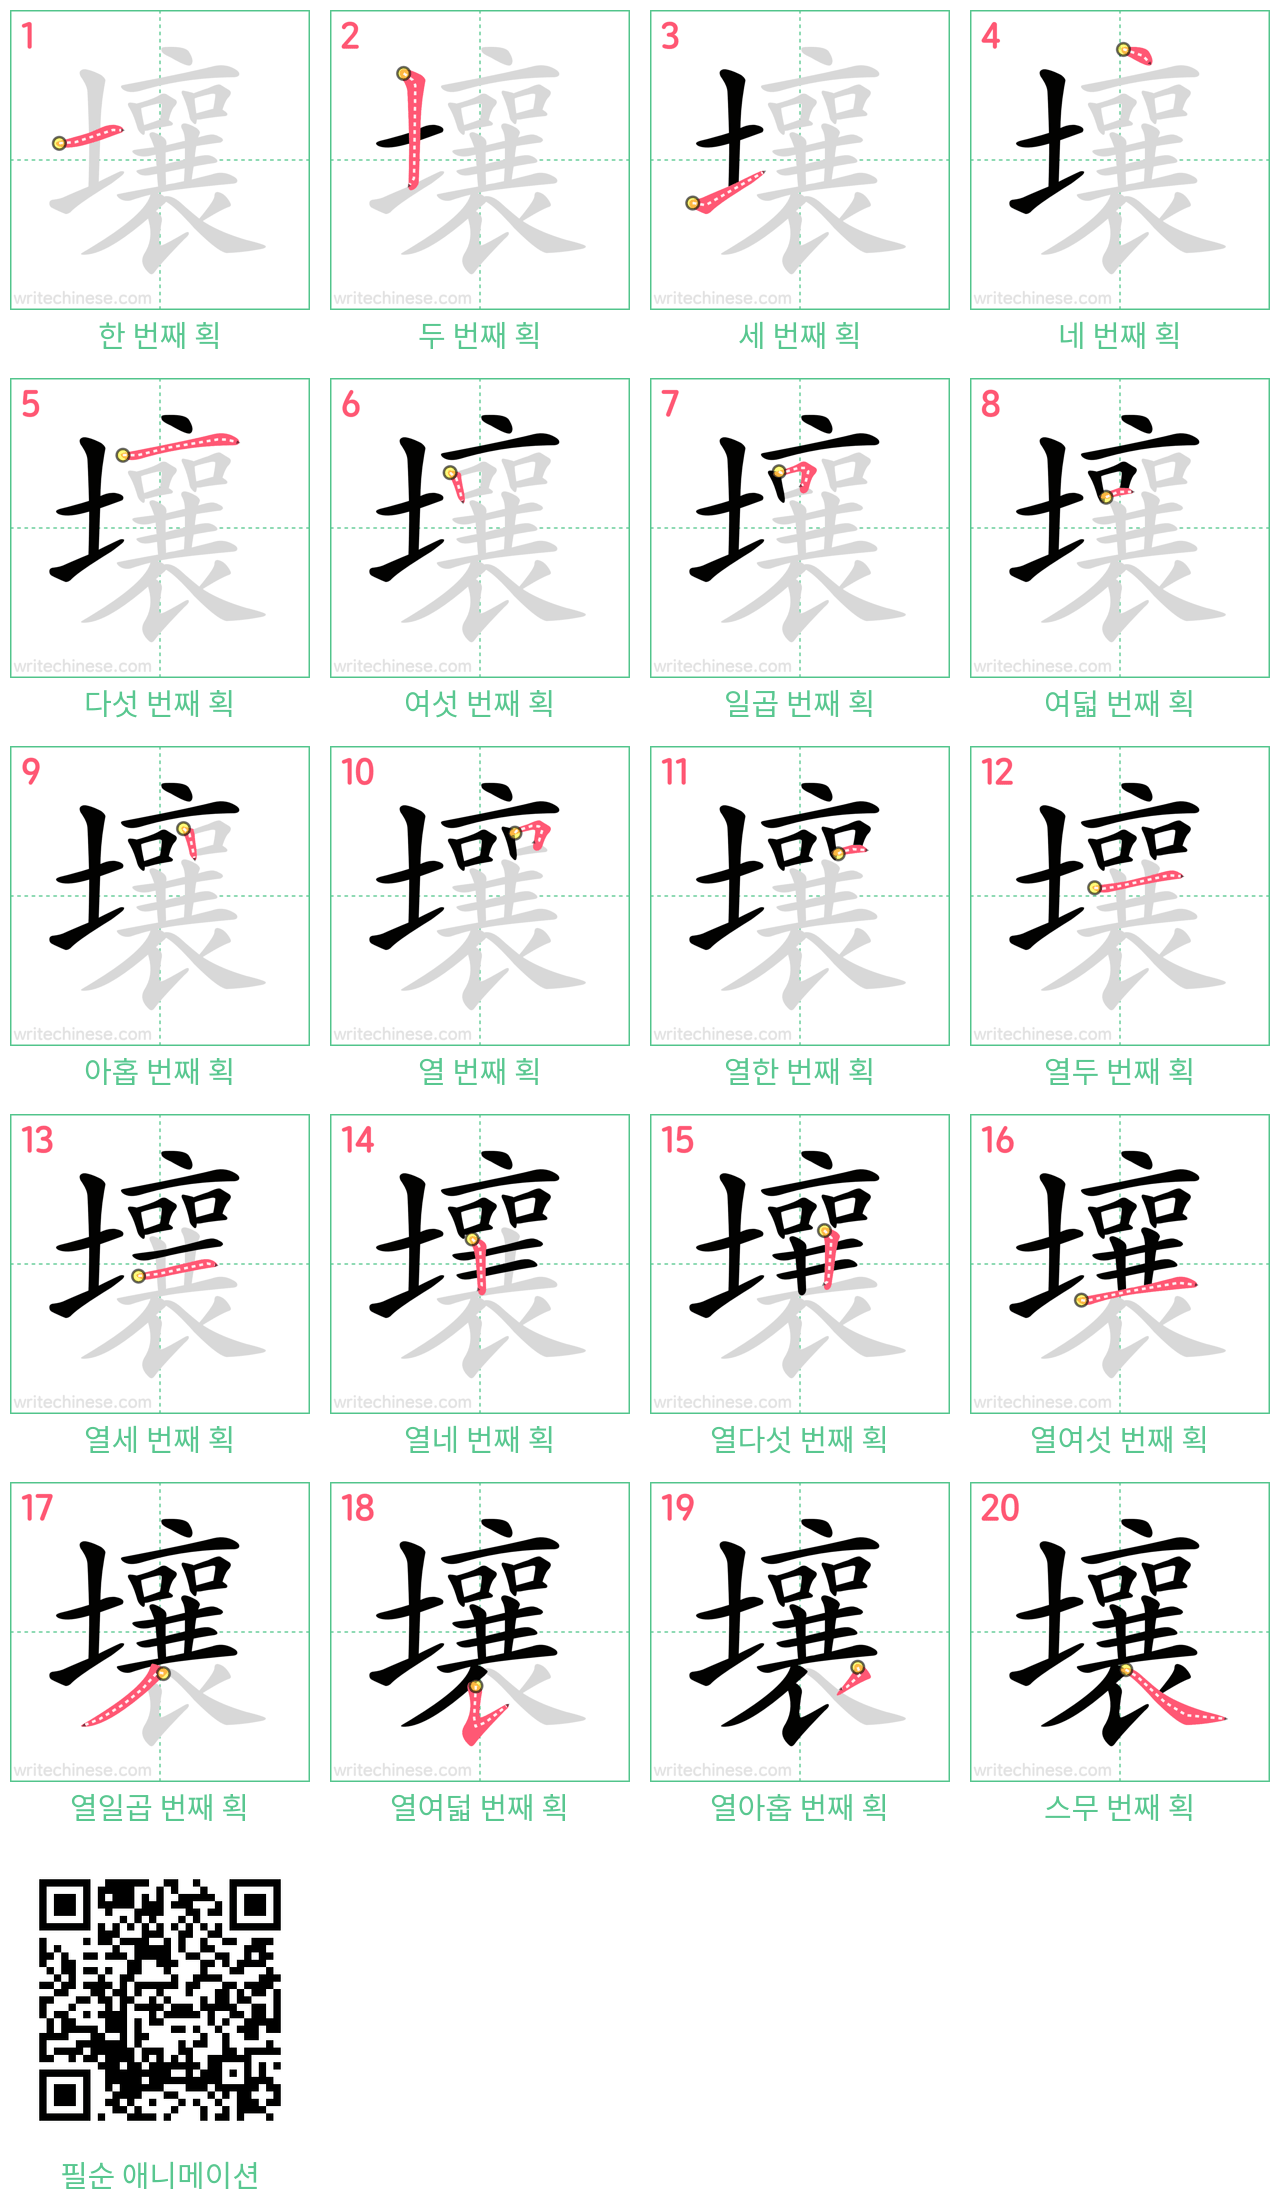 壤 step-by-step stroke order diagrams